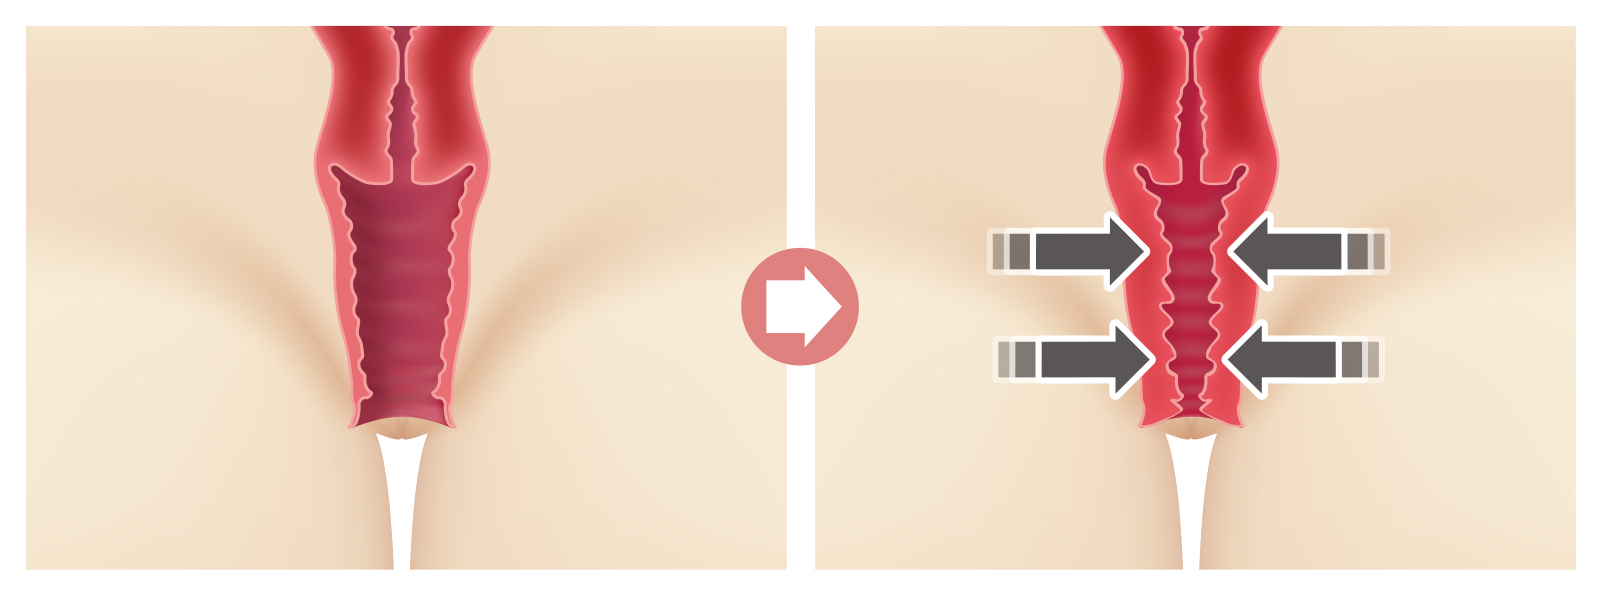 韓式陰道緊縮手術，是以類似用線圈一圈圈的套緊，由大變小由鬆至緊